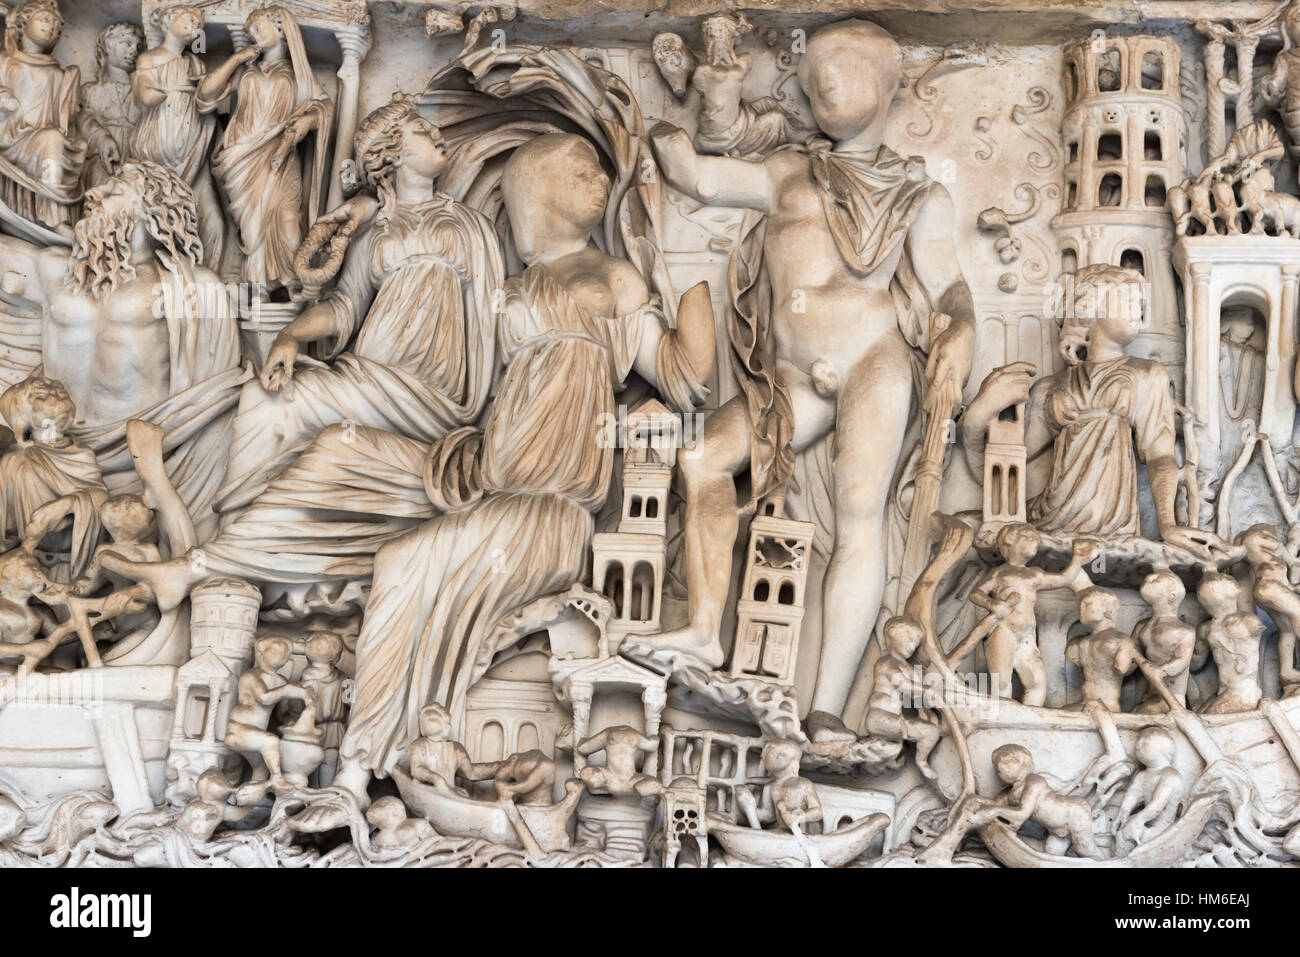 Ancienne Décharge de Romain, Rome - Italie Banque D'Images